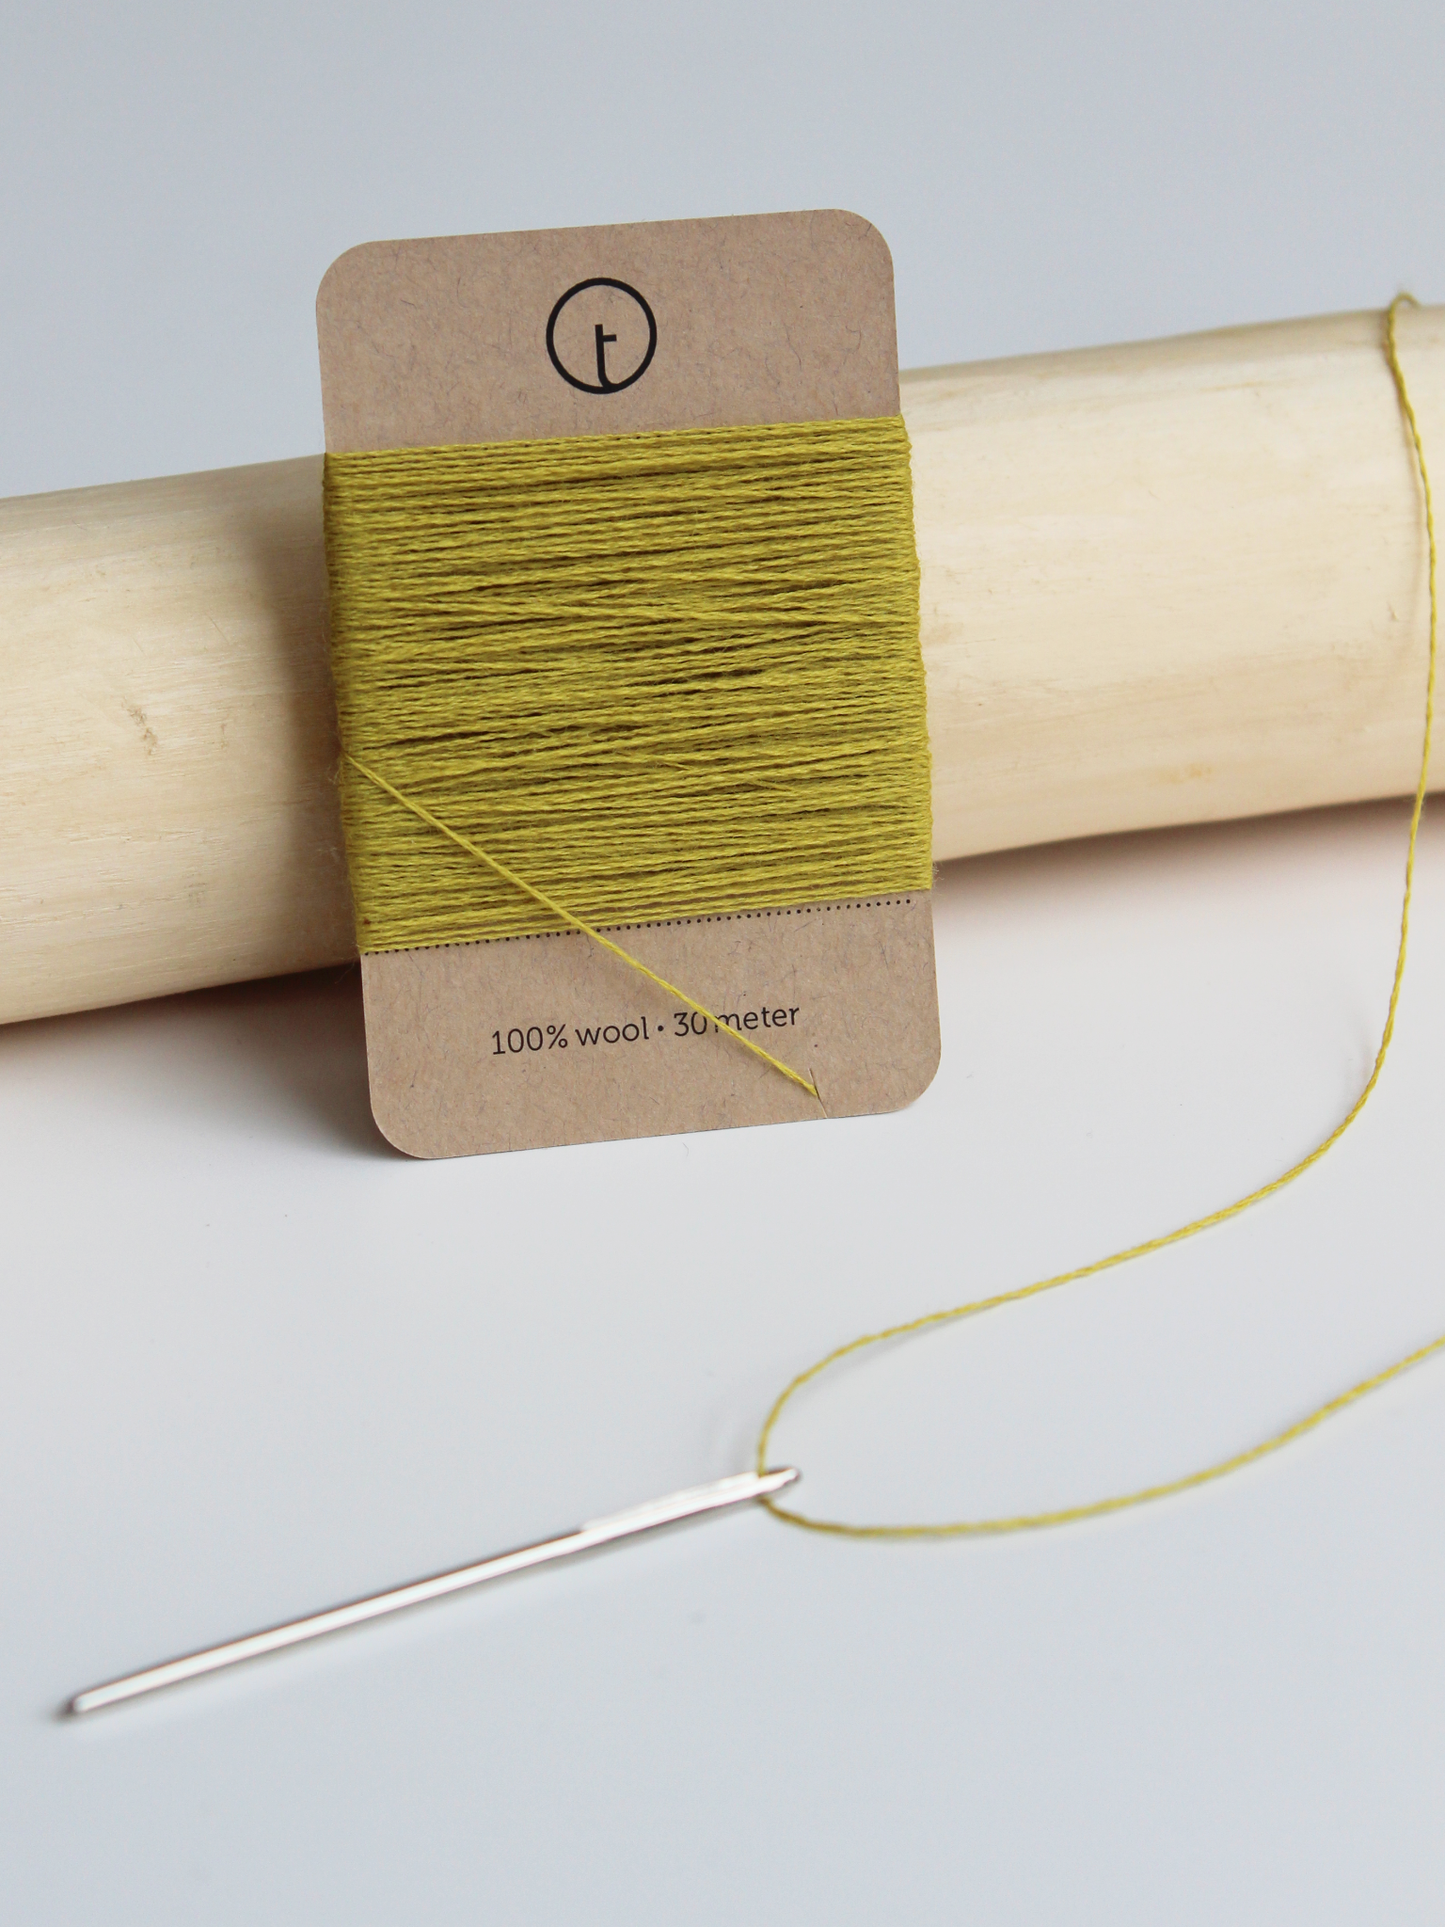 Wool Darning Kit – toolly